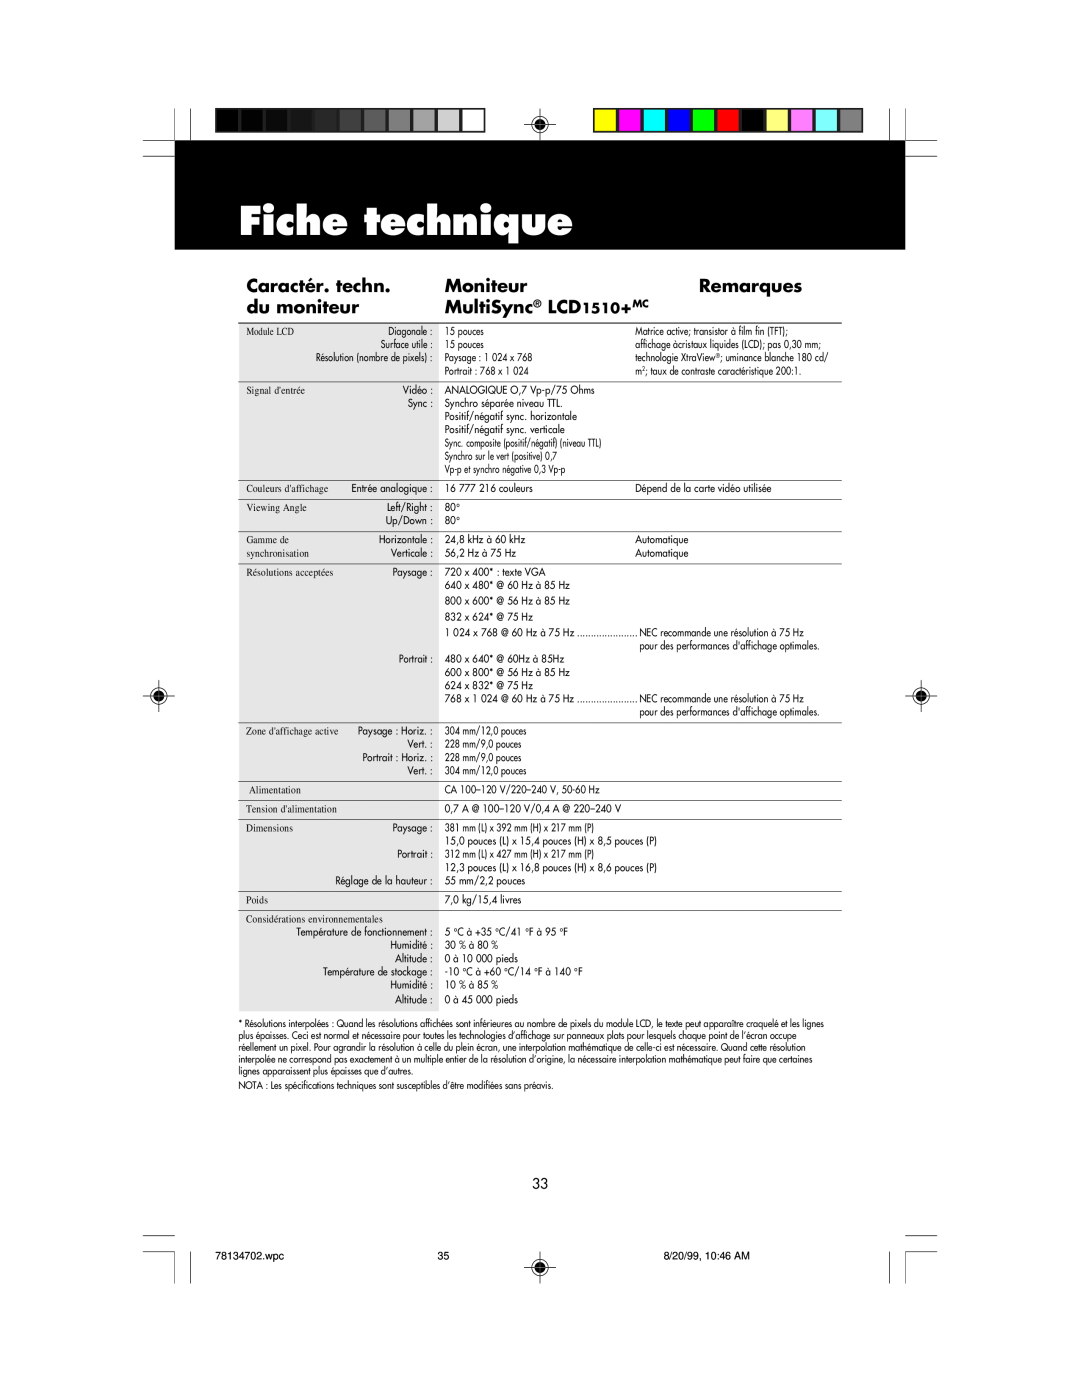 NEC user manual Fiche technique, Caractér. techn, Moniteur, Remarques, du moniteur, MultiSync LCD1510+MC 